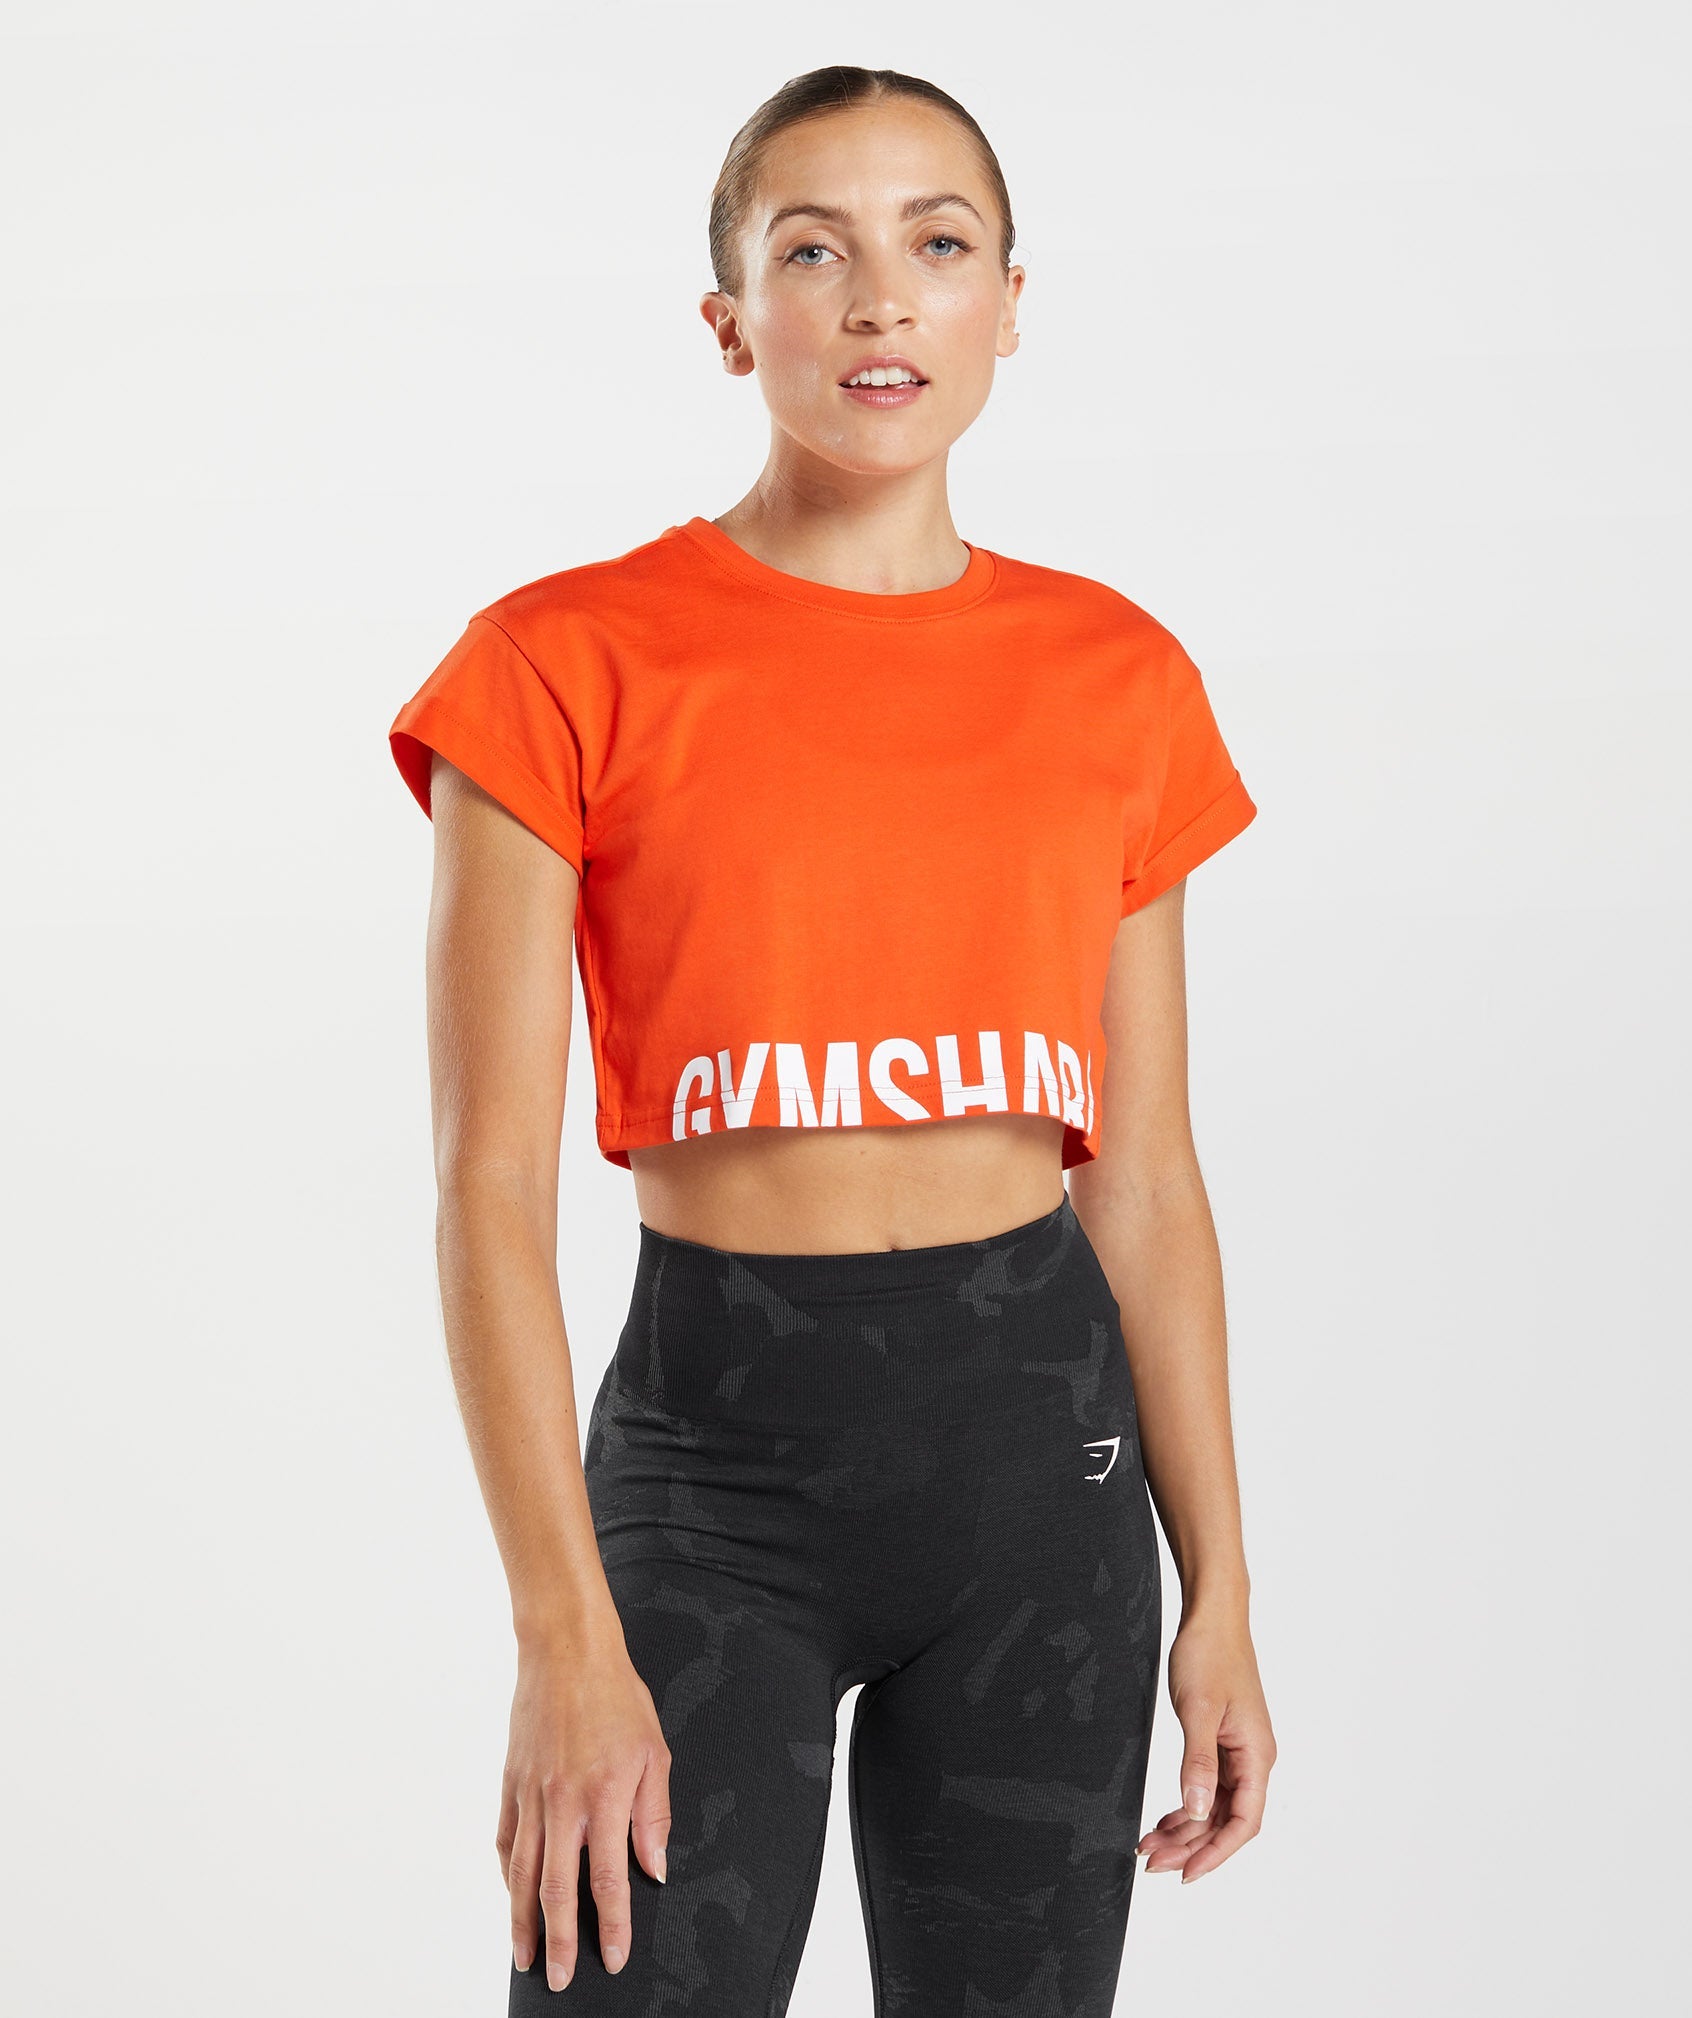 Gymshark Crop Top Womens S Orange Fraction Short Sleeve Crew Neck Shirt